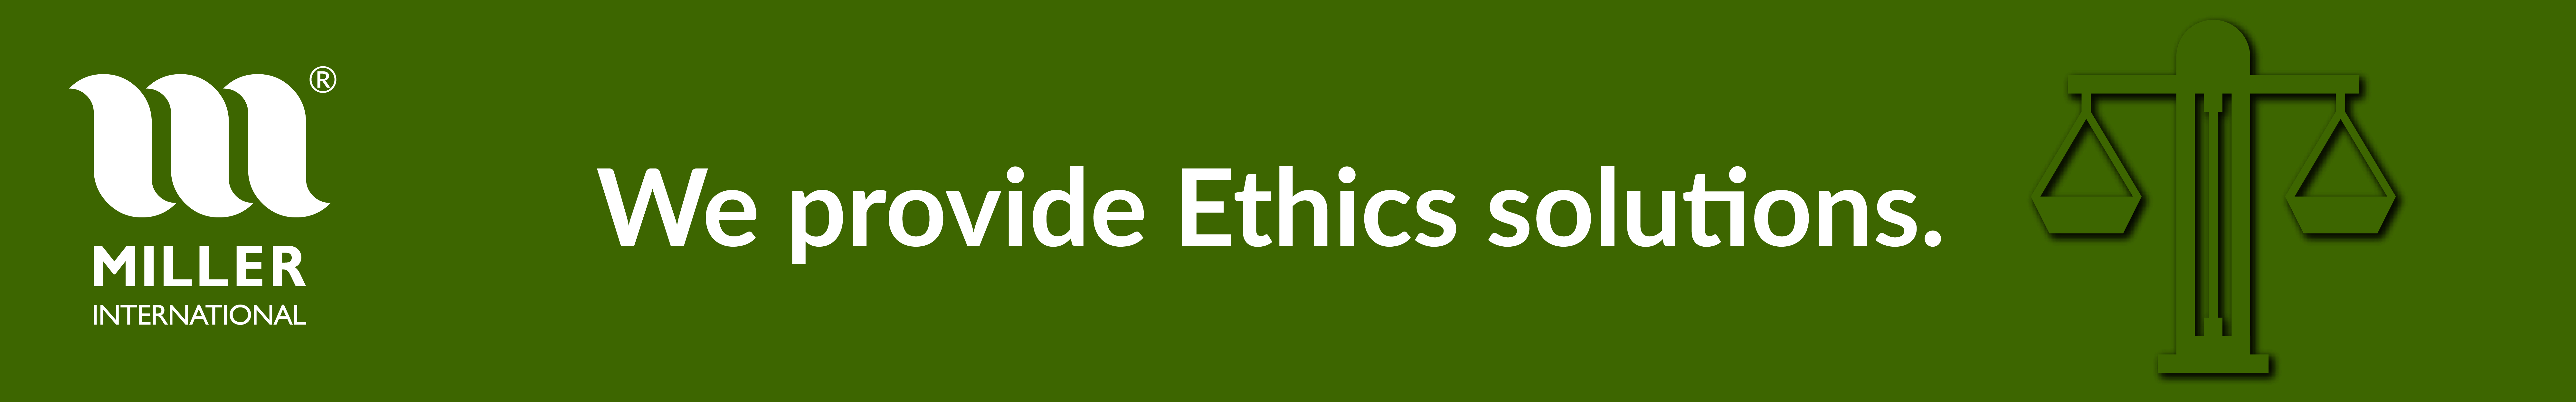 Ethics - Miller International